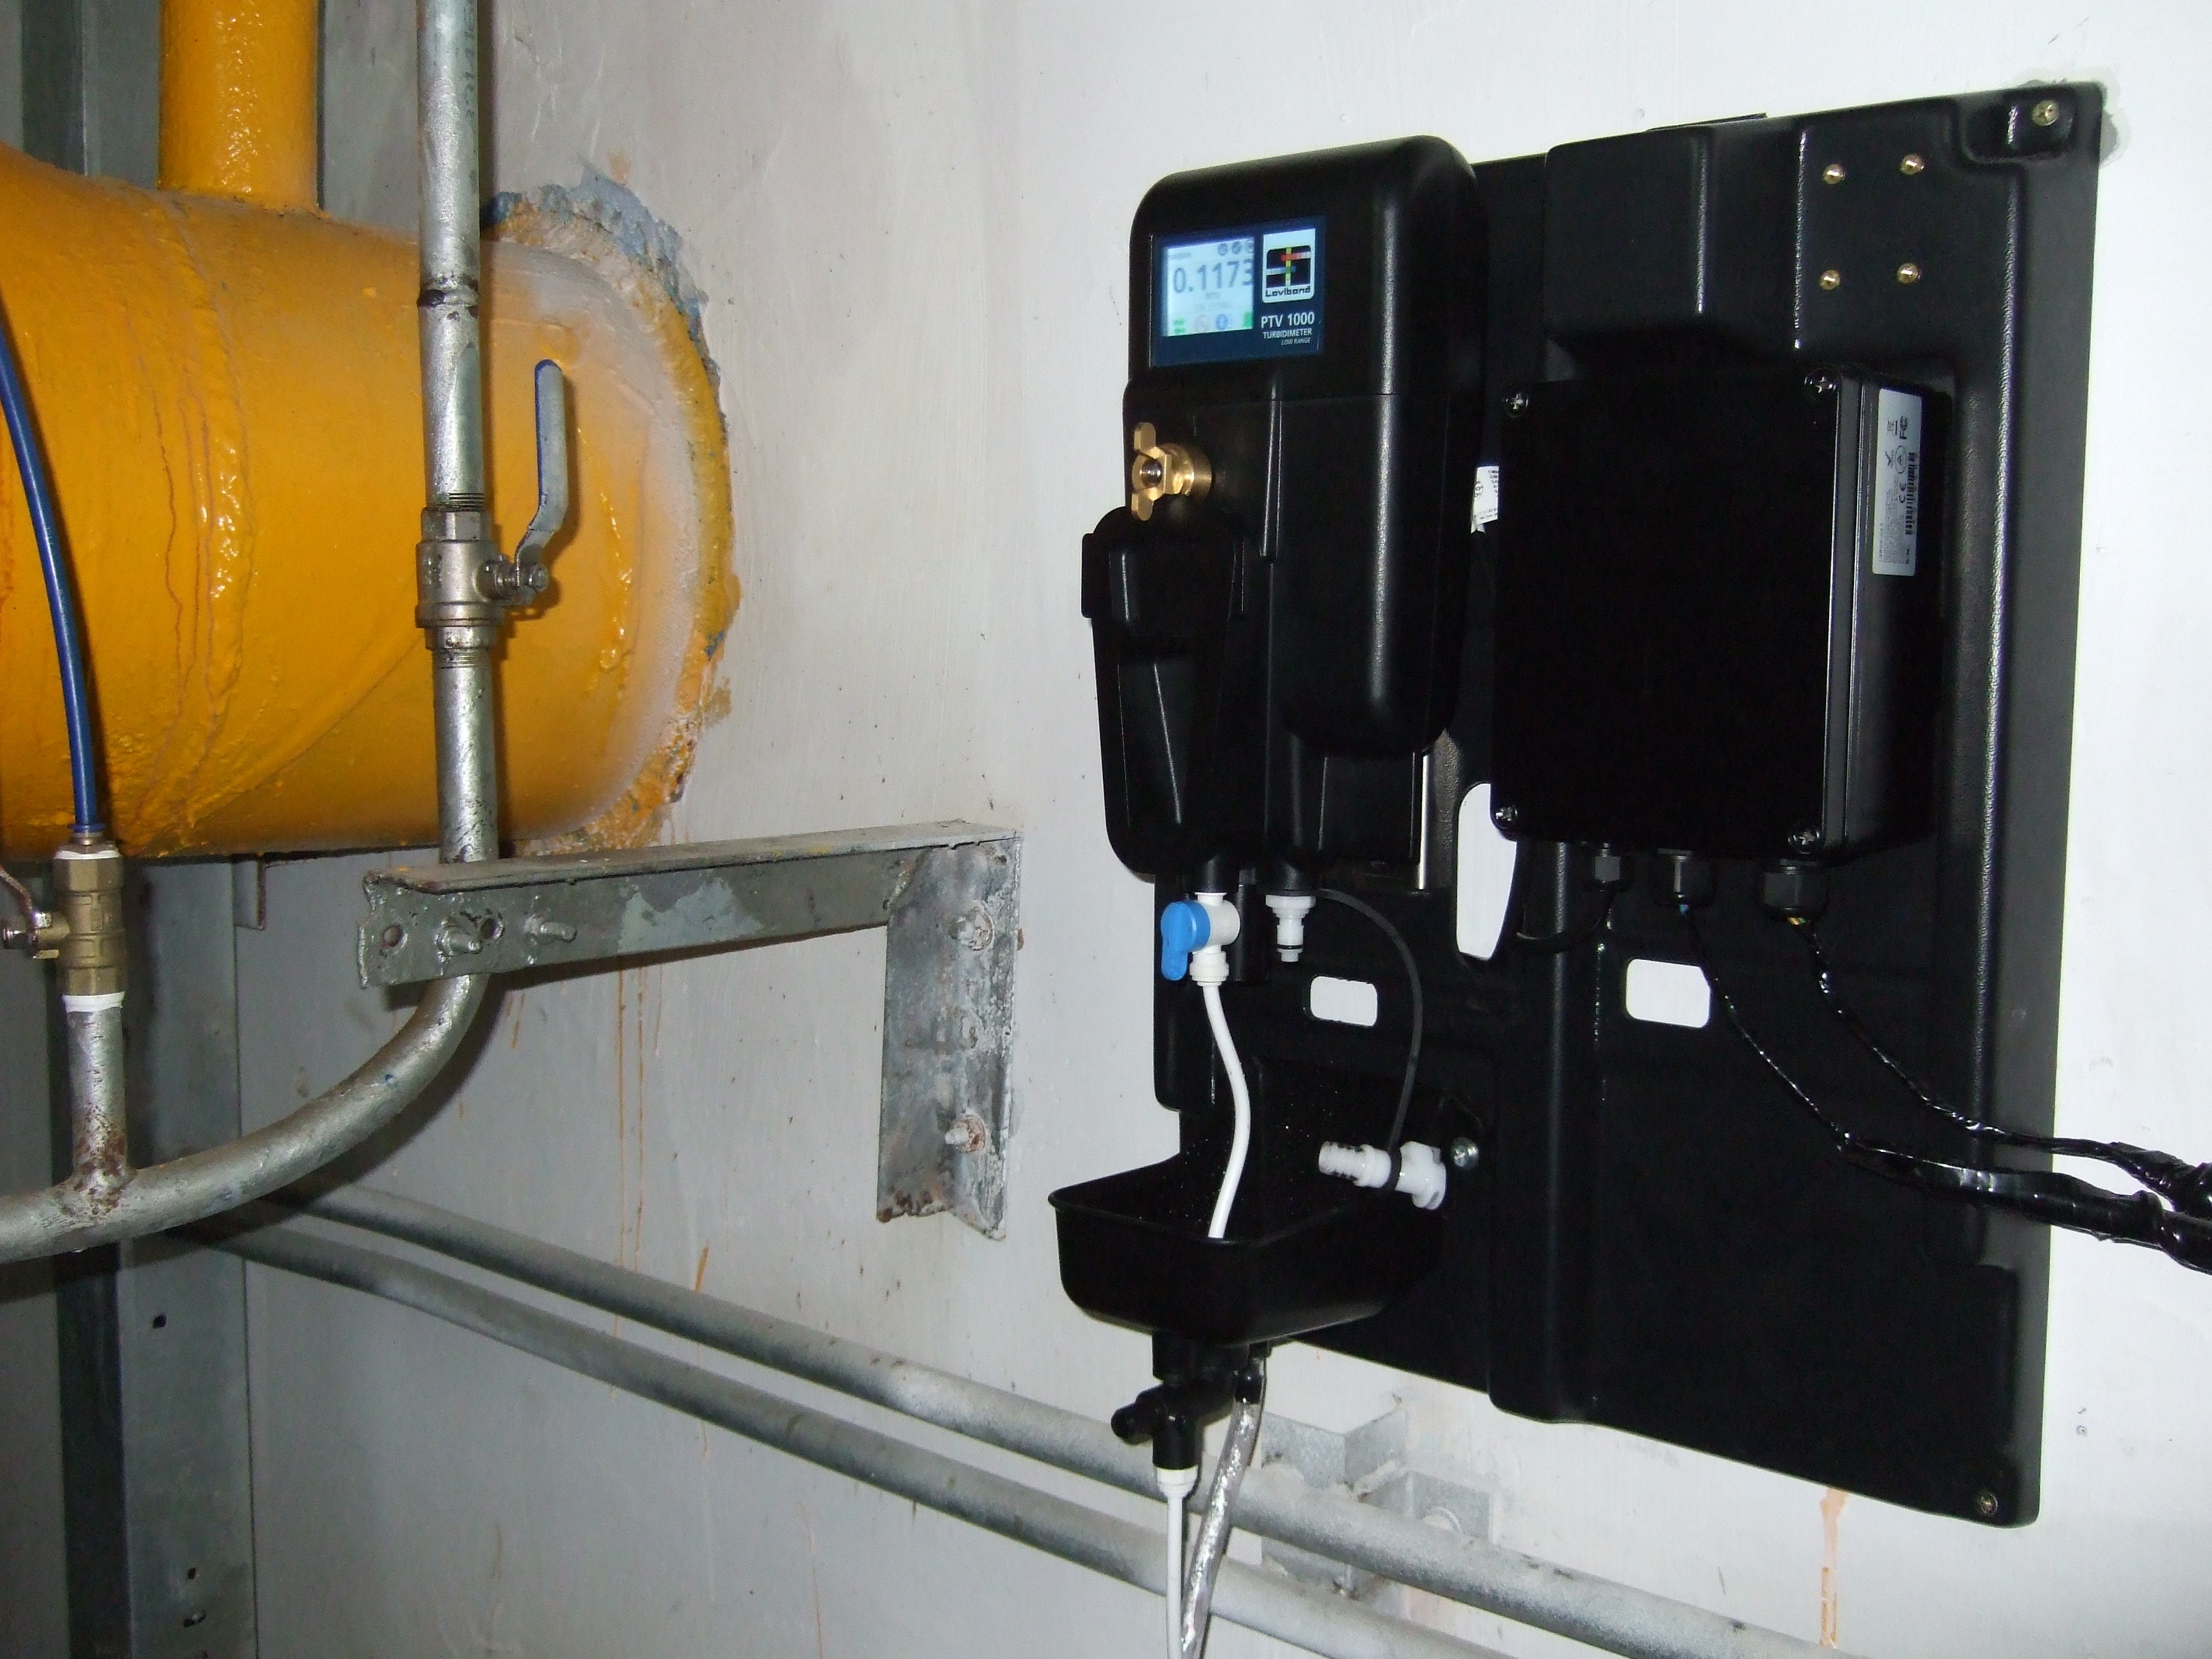 罗威邦|罗维朋 低量程水质在线检测浊度仪 PTV1000